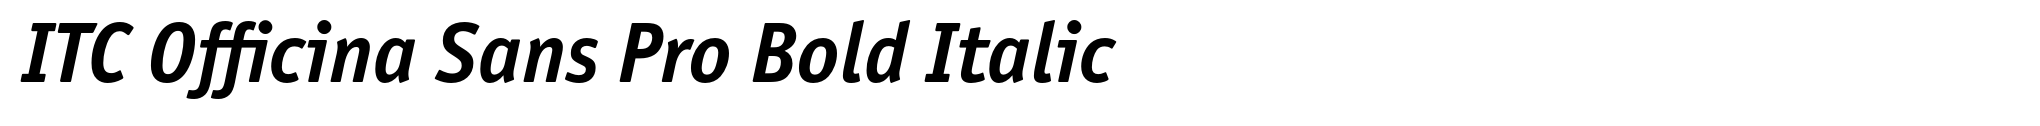 ITC Officina Sans Pro Bold Italic image